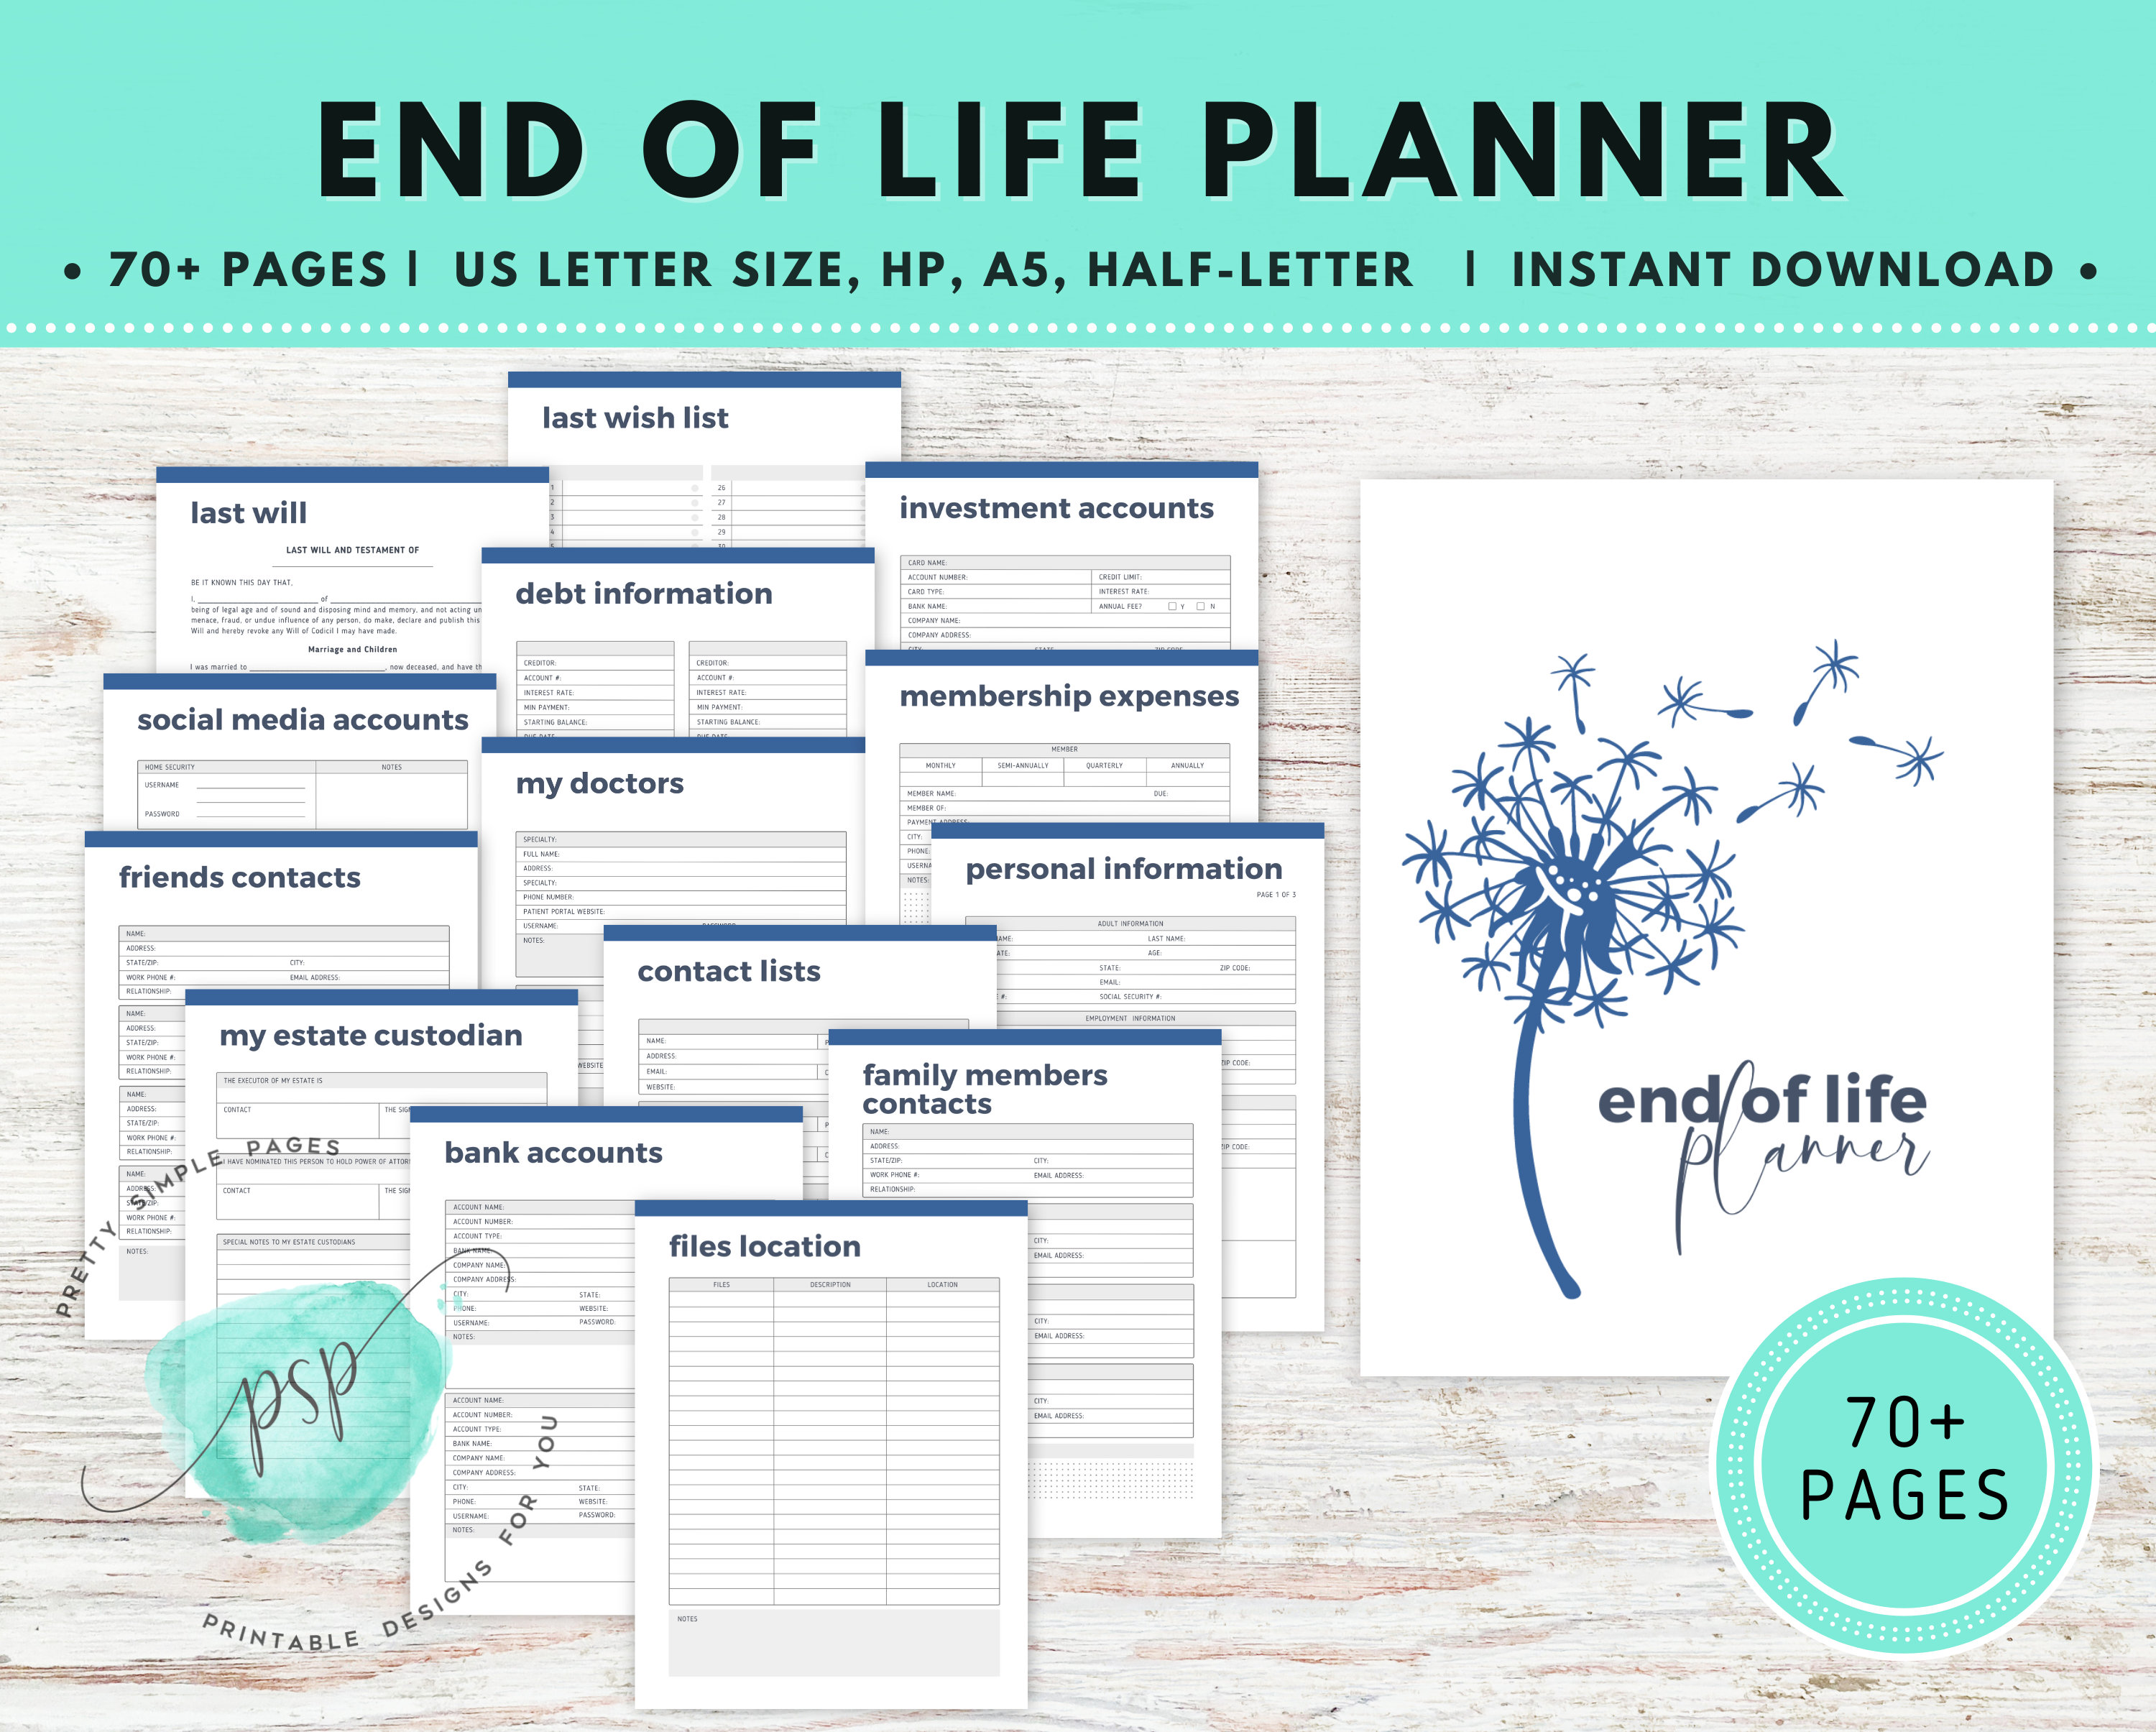 End of Life Planner – LEGEND